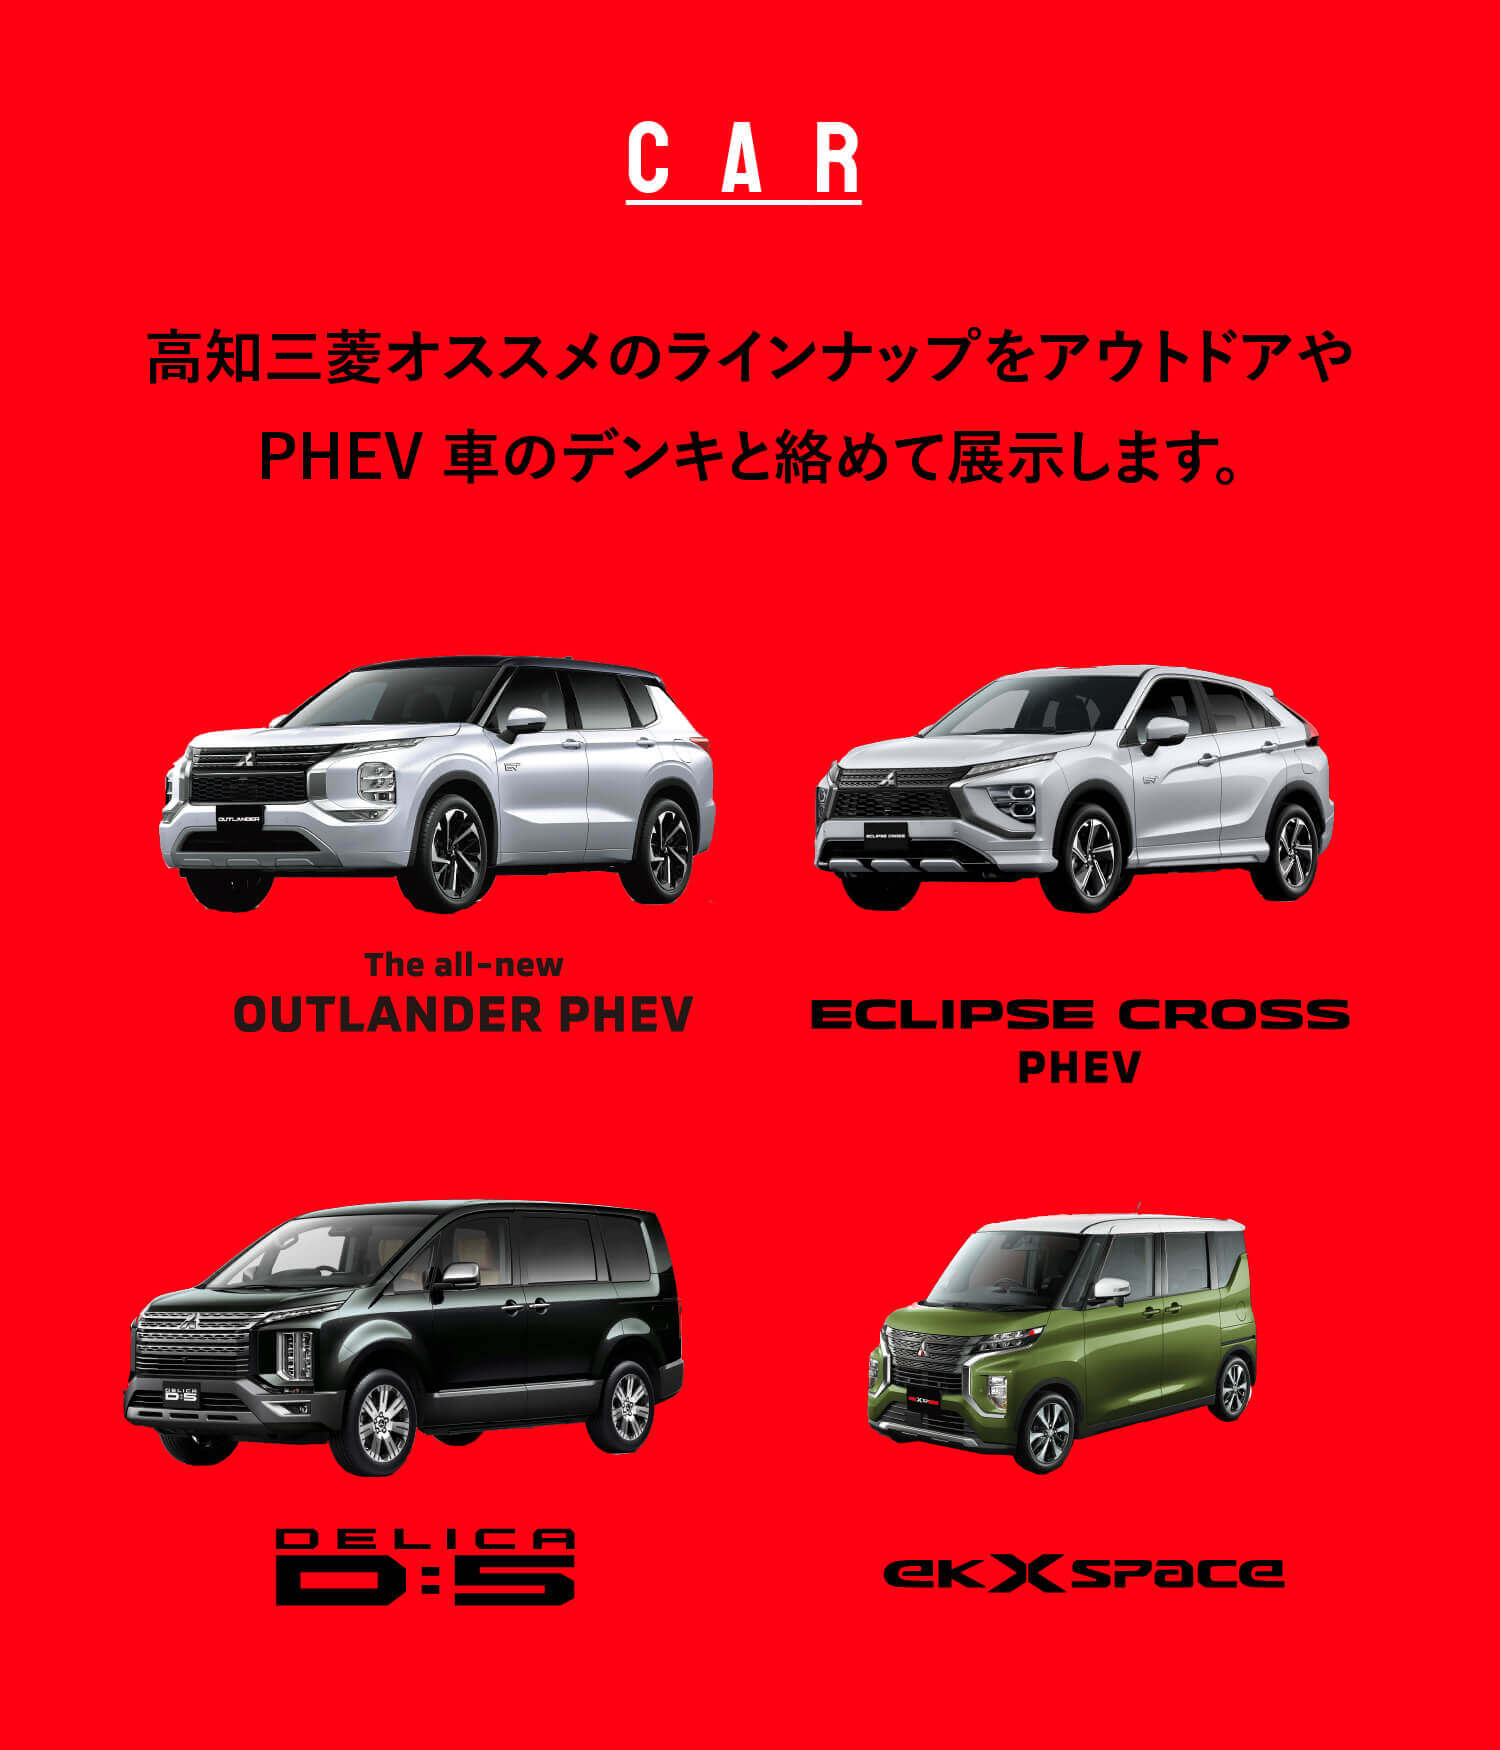 高知三菱オススメのラインナップをアウトドアやPHEV 車のデンキと絡めて展示します。